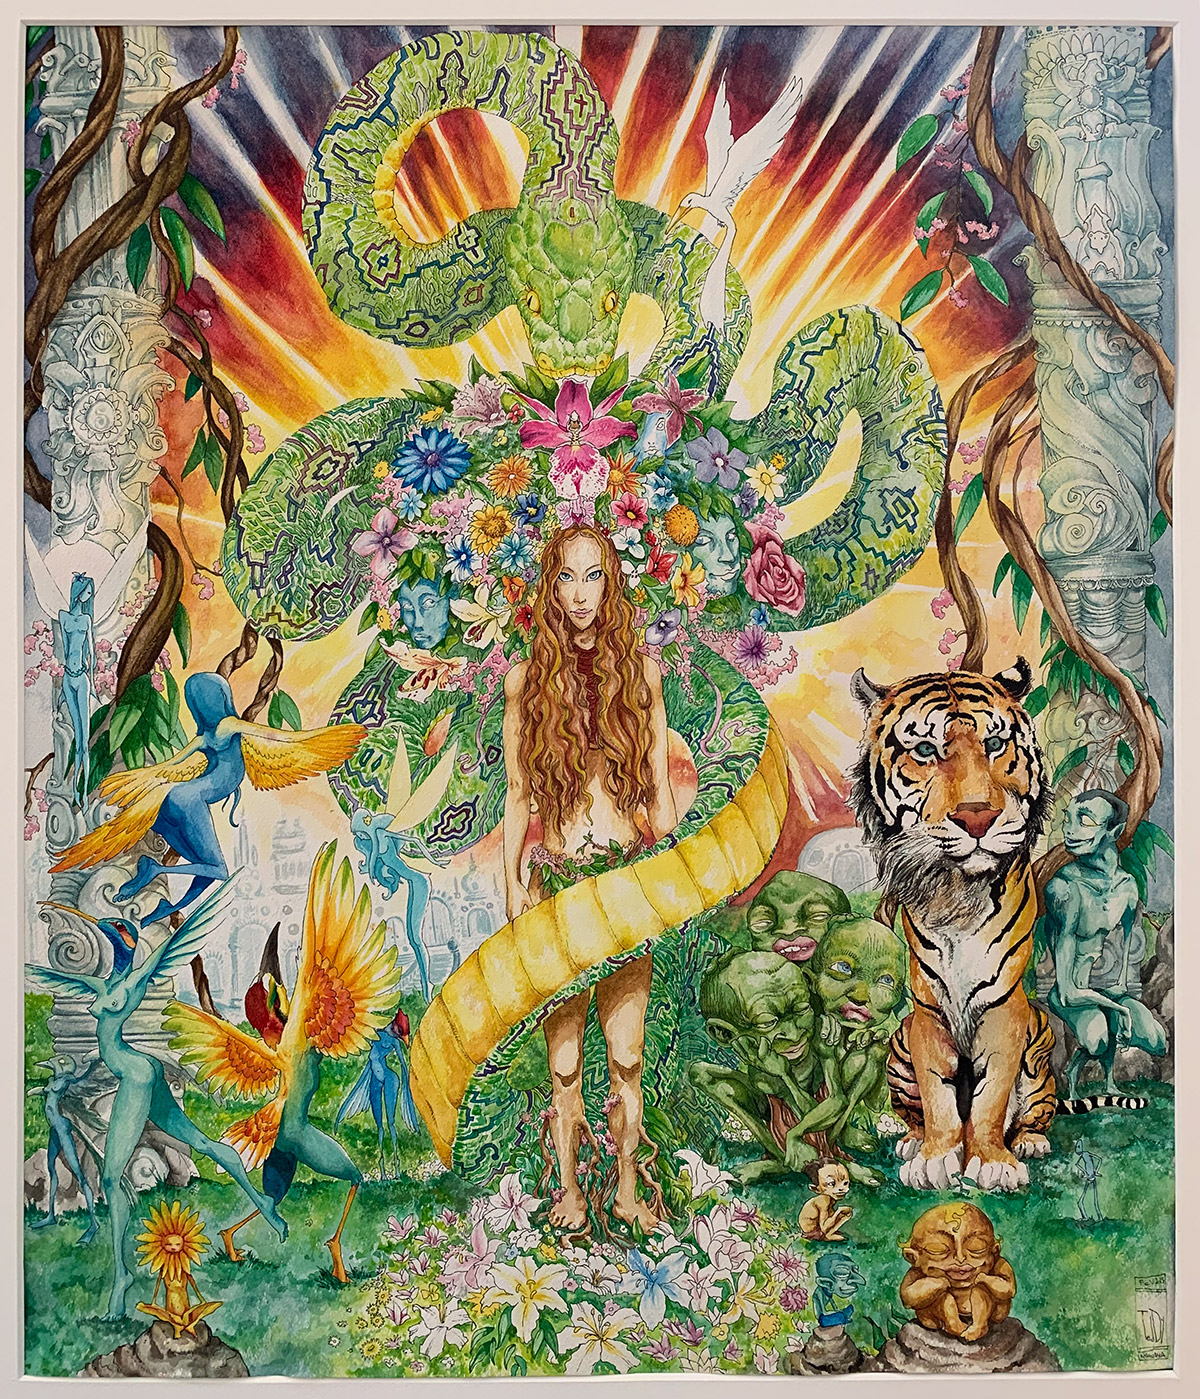 Dessin "Aya Diète" 2014, Stylo noir et aquarelle sur papier, 55 x 46 cm de l'artiste Teddy Ros Cette œuvre a été réalisée pendant que j’étais en diète d’apprentissage avec la plante maîtresse/médicinale Ayahuasca. Elle représente l’âme cachée de la plante sous ses deux formes les plus communes : le serpent anaconda (symbole de la sagesse et du savoir) et la déesse mère Ayahuasca. On y retrouve son royaume médicinal, la liane de l’Ayahuasca, ses parfums (ici représentés par les fleurs), accompagnées de ses nombreux esprits, notamment les humanoïdes à têtes de tigre (les gardiens de l’ayahuasca), ce sont des personnages asexués mais avec des têtes féminines. Cette œuvre fait référence à l’art visionnaire de Pablo Amaringo ancien chaman Shipibo-conibo qui s’est converti à la peinture chamanique en fin de vie. Ses œuvres représentent également les mondes des plantes médicinales.